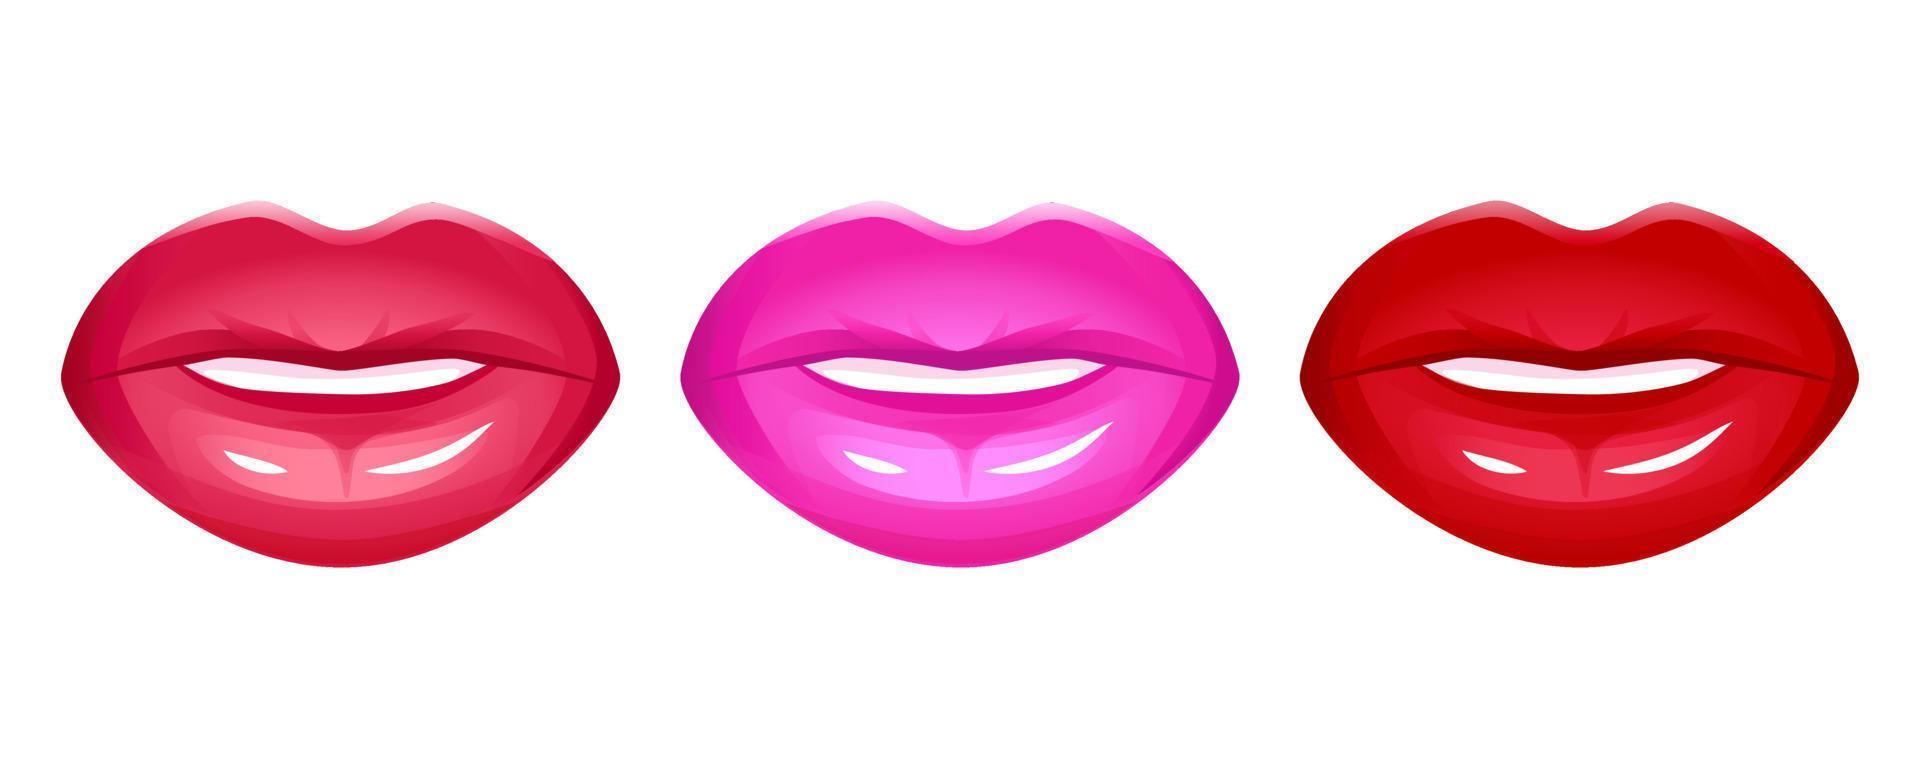 labbra realistiche insieme dell'icona di vettore isolato su bianco. bocca 3d delle donne, rossetto lucido lucido rosso. illustrazione di moda glamour.